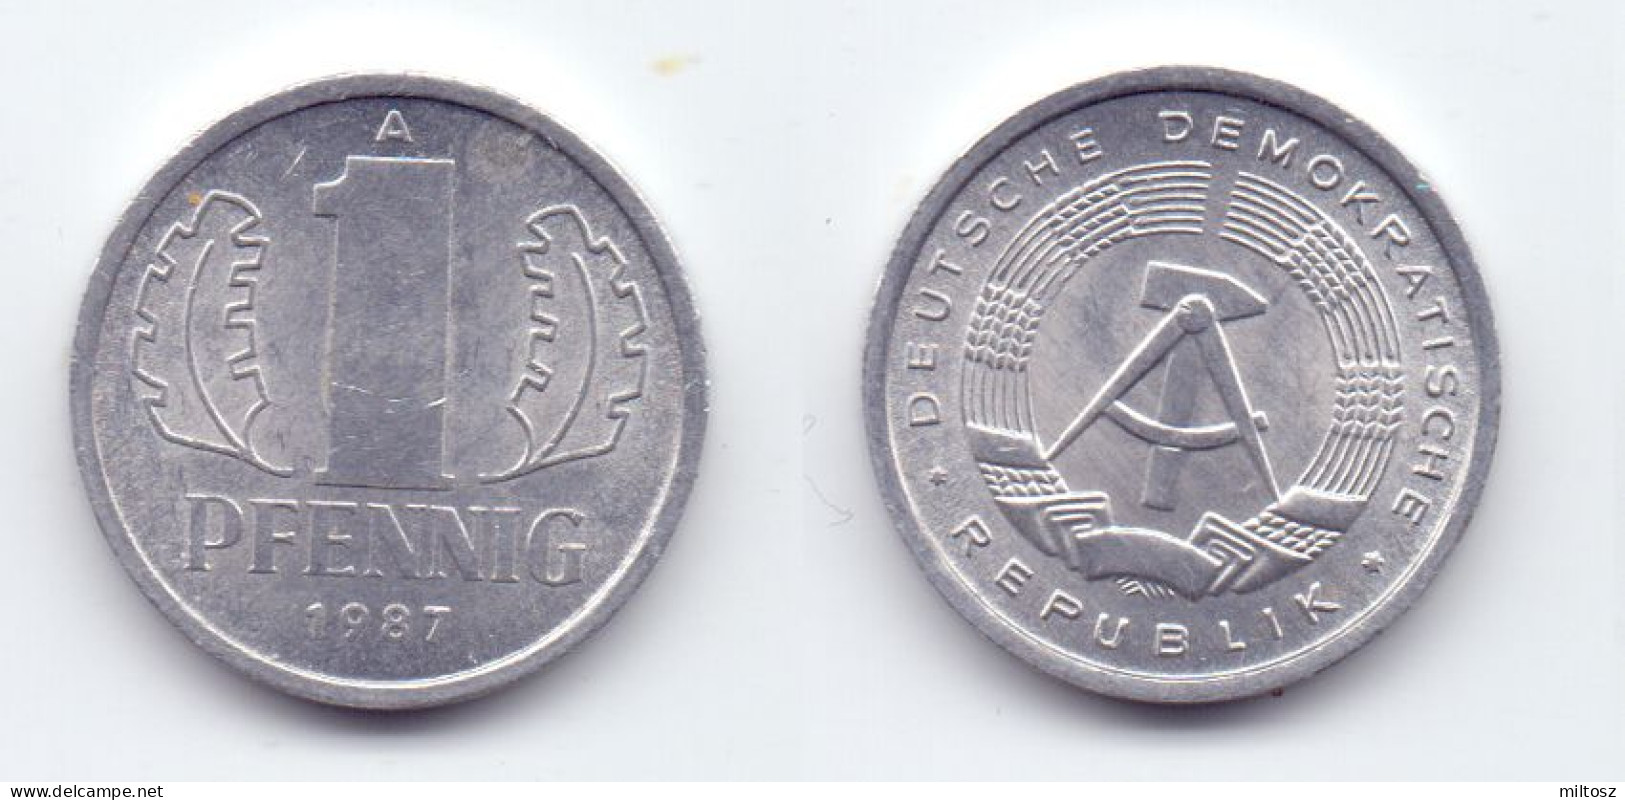 Germany DDR 1 Pfennig 1987 A - 1 Pfennig